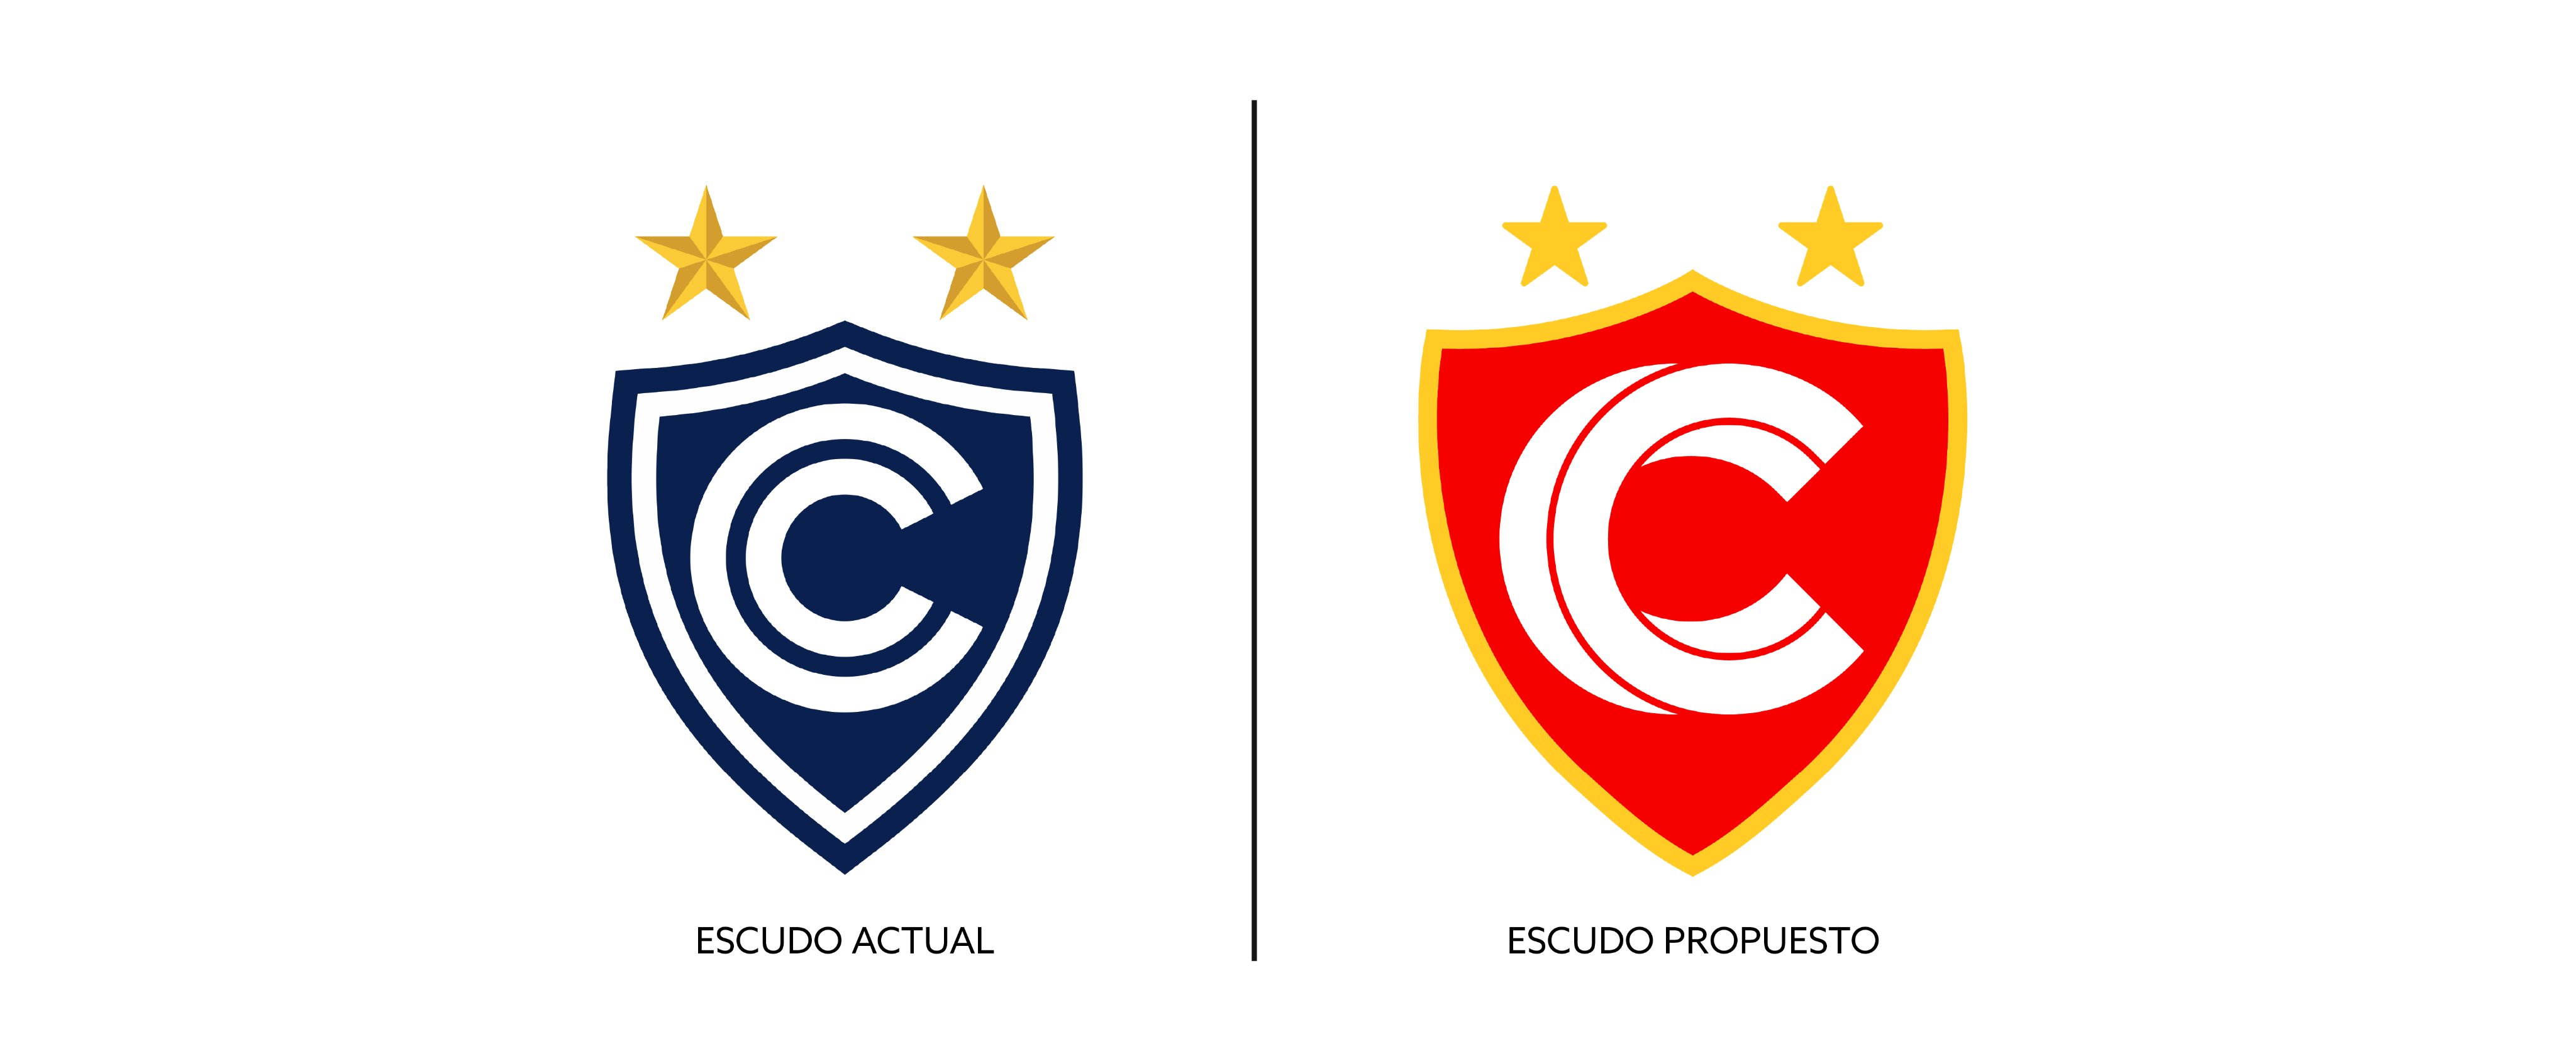 24- Club Sportivo Cienciano